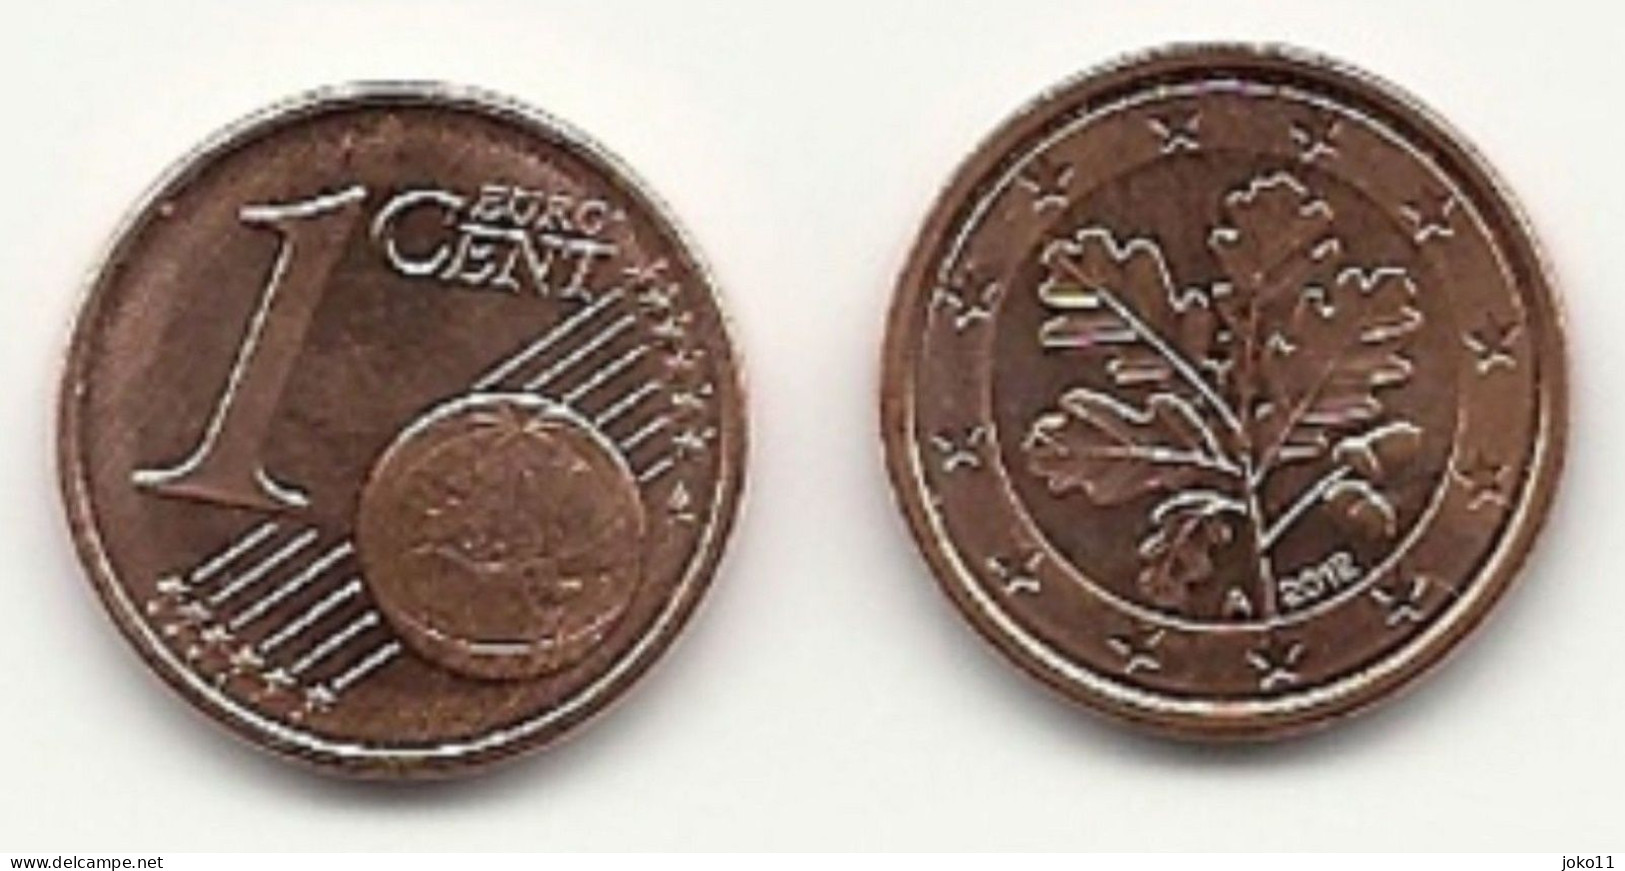 1 Cent, 2012, Prägestätte (A) Vz, Sehr Gut Erhaltene Umlaufmünze - Germany